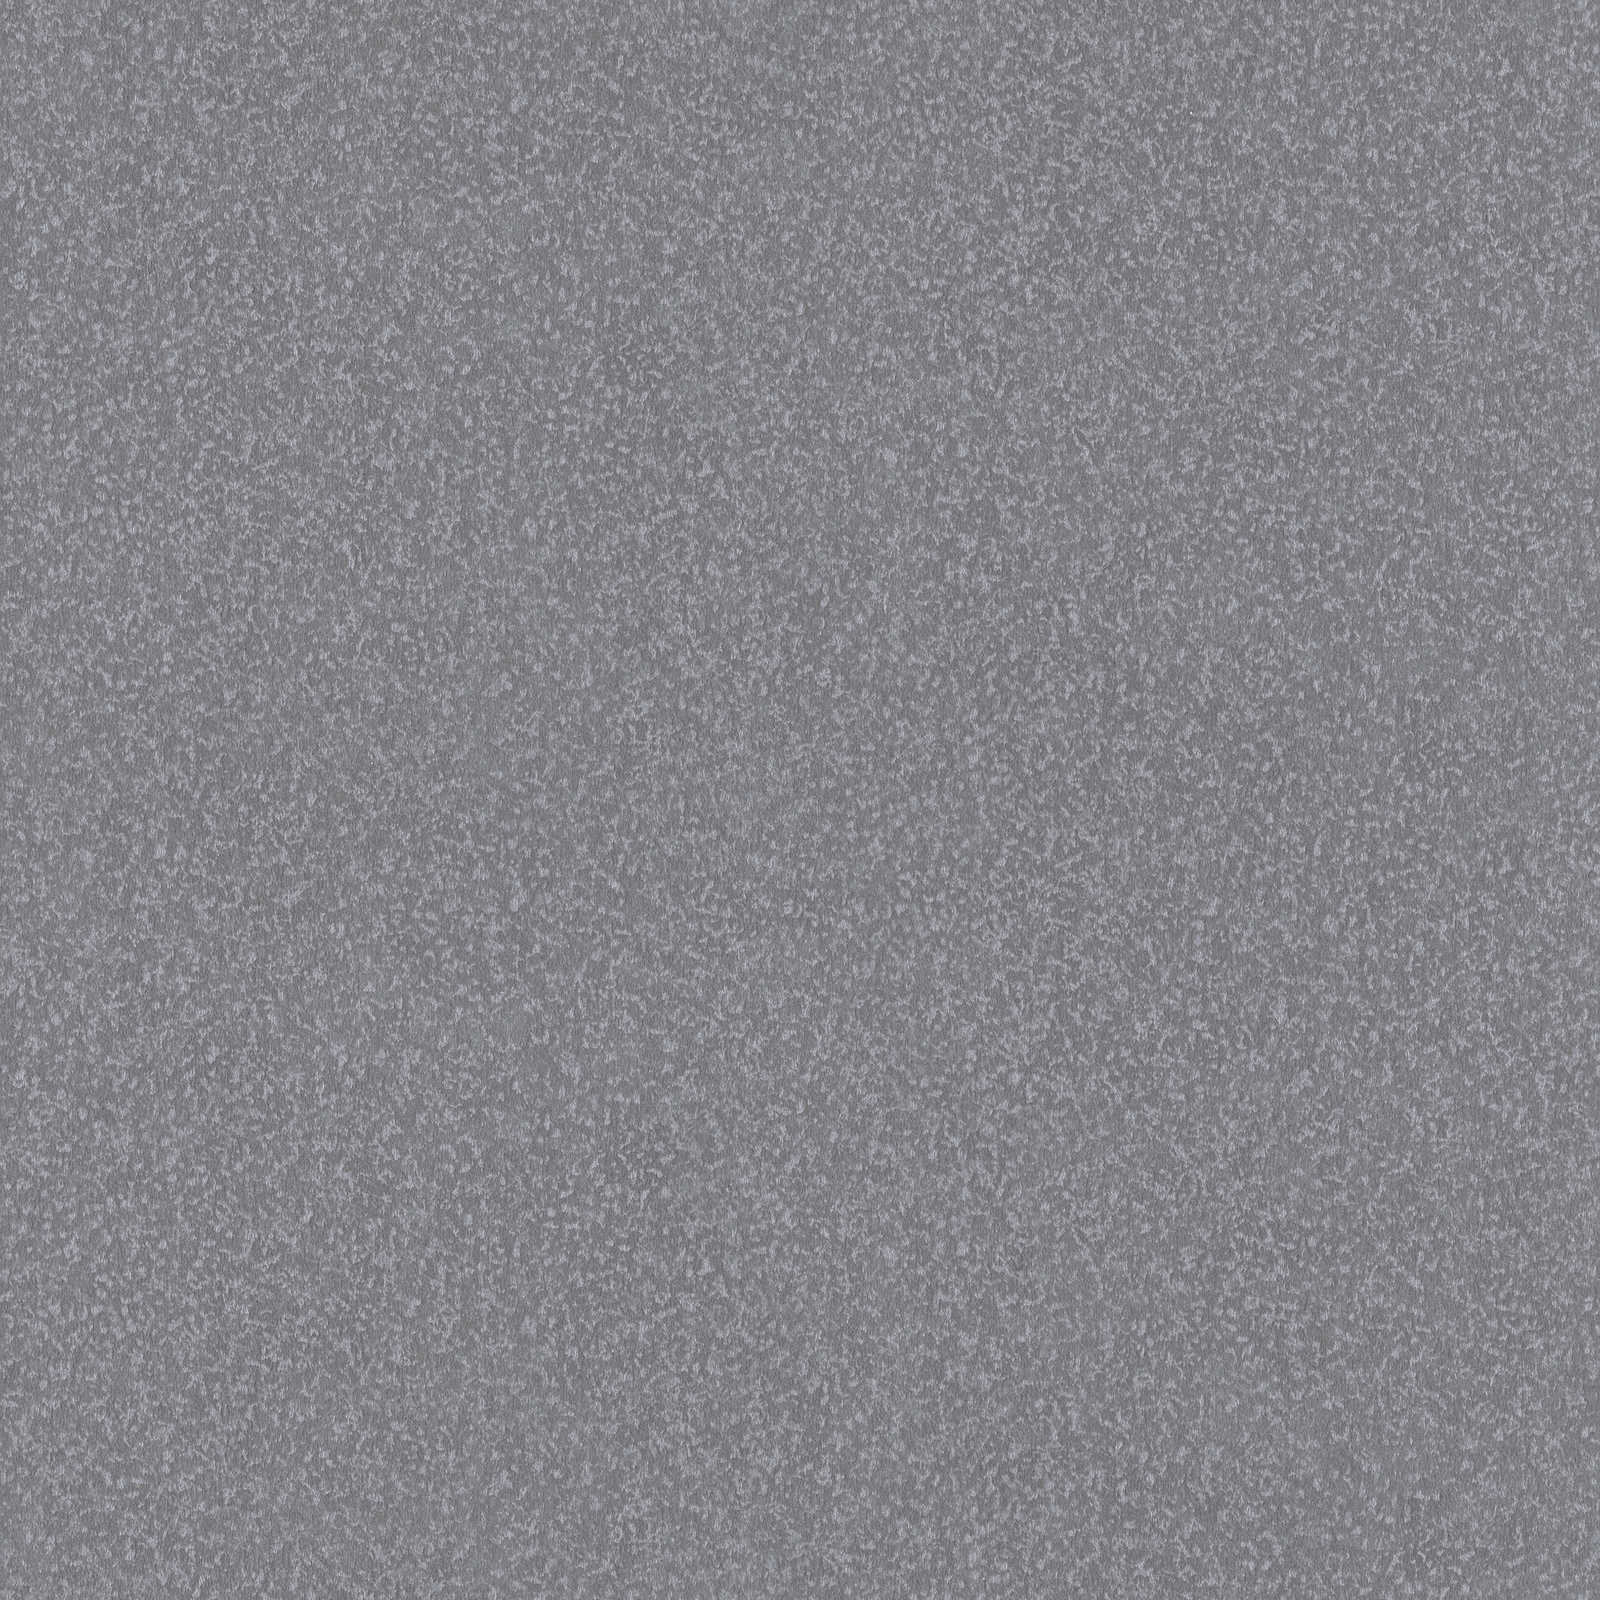 Einfarbige Papiertapete glänzend – Grau
